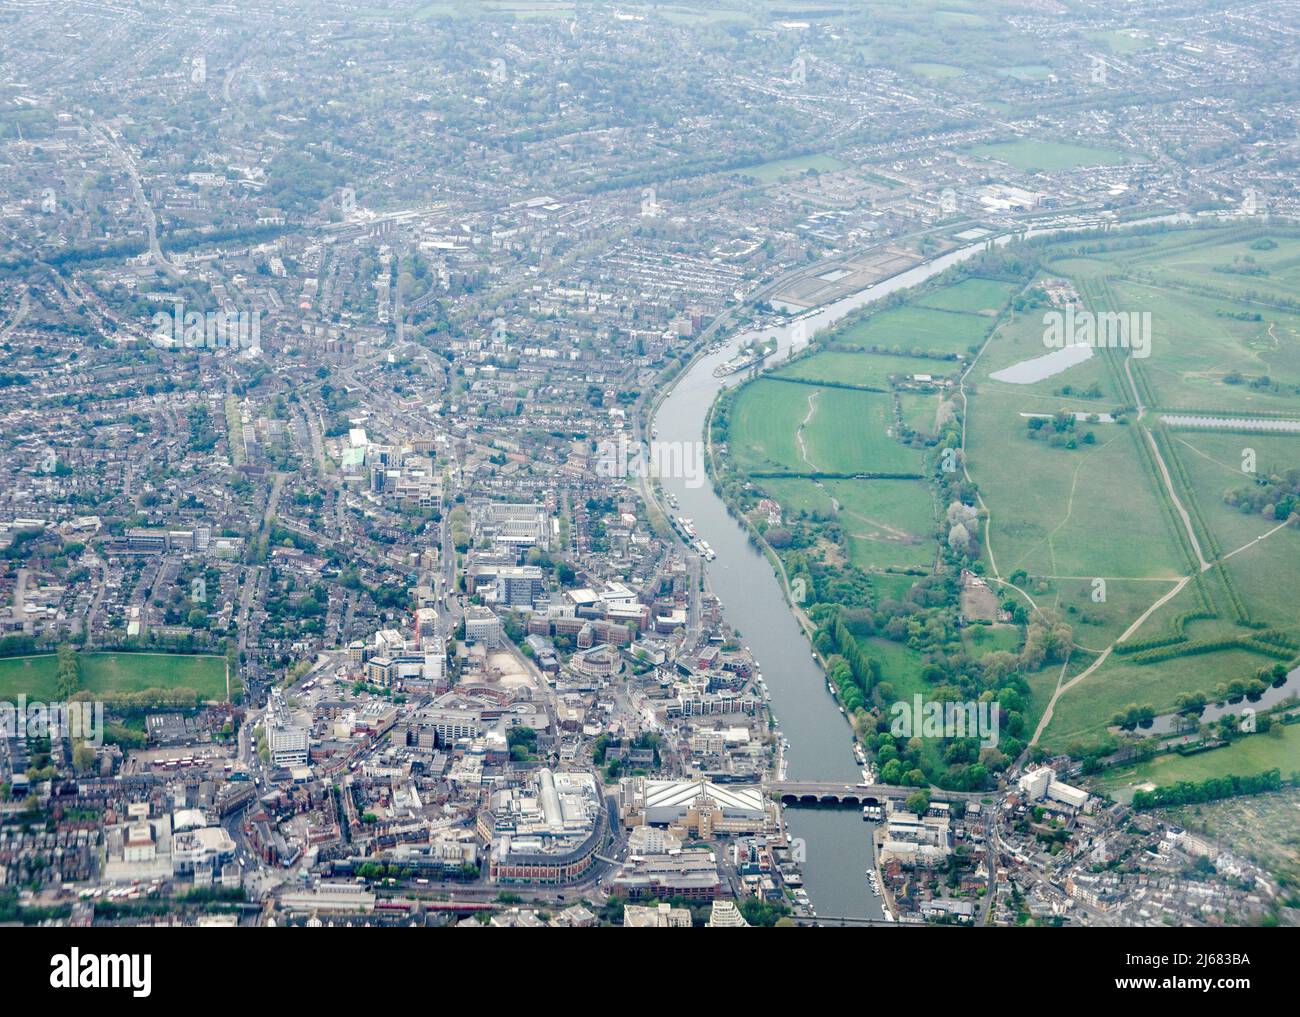 Blick von oben auf das Stadtzentrum von Kingston-upon-Thames am Ufer der Themse im Westen Londons mit dem Gelände des Hampton Court Palace auf der ri Stockfoto